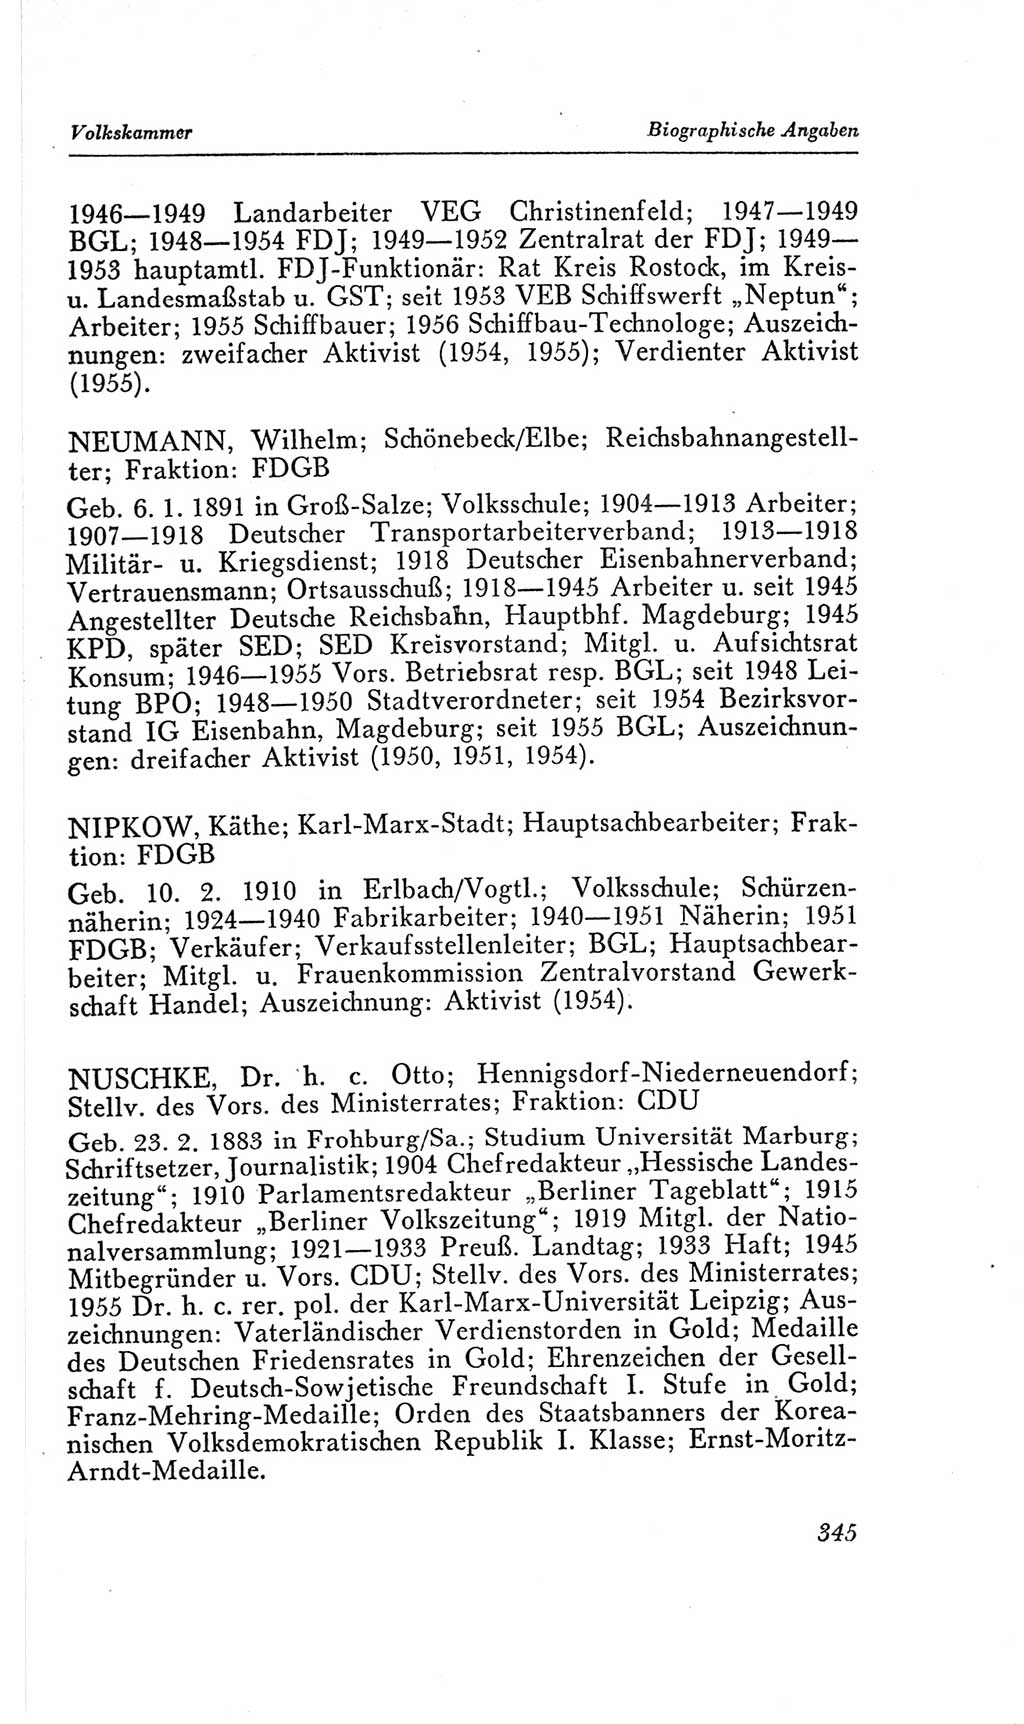 Handbuch der Volkskammer (VK) der Deutschen Demokratischen Republik (DDR), 2. Wahlperiode 1954-1958, Seite 345 (Hdb. VK. DDR, 2. WP. 1954-1958, S. 345)